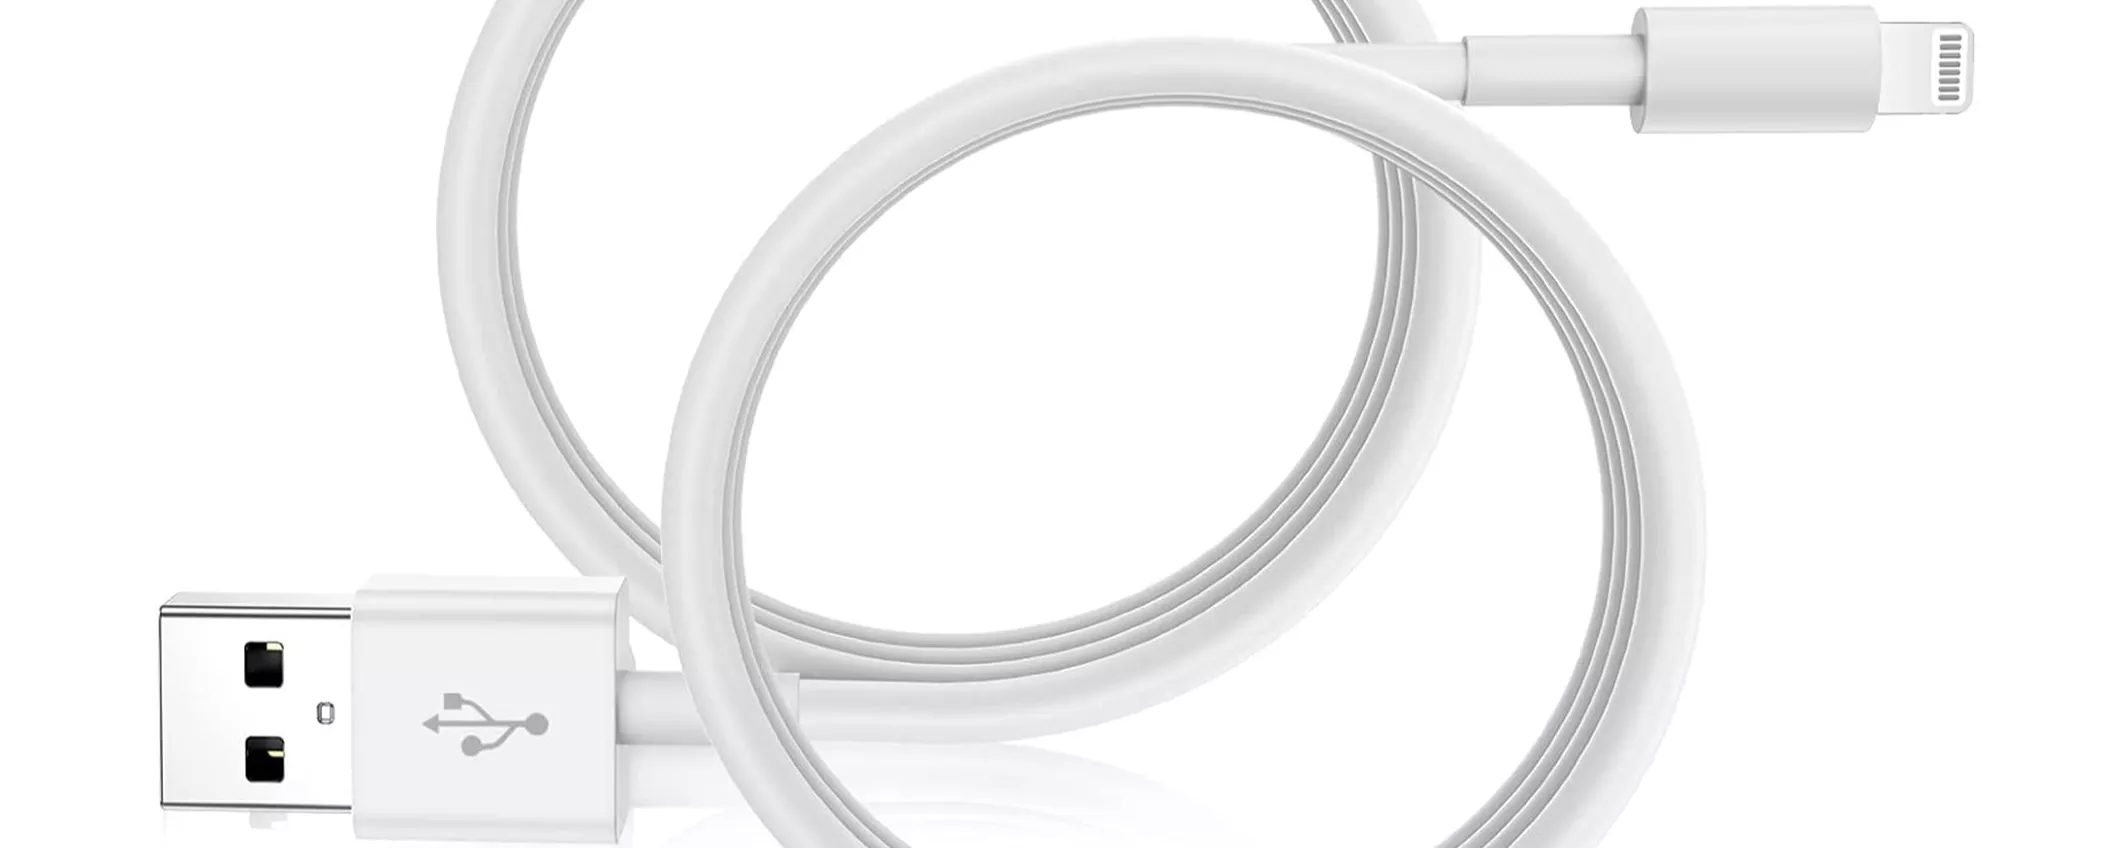 2 Cavi iPhone da 2m certificati Apple MFi, a soli 13,99€